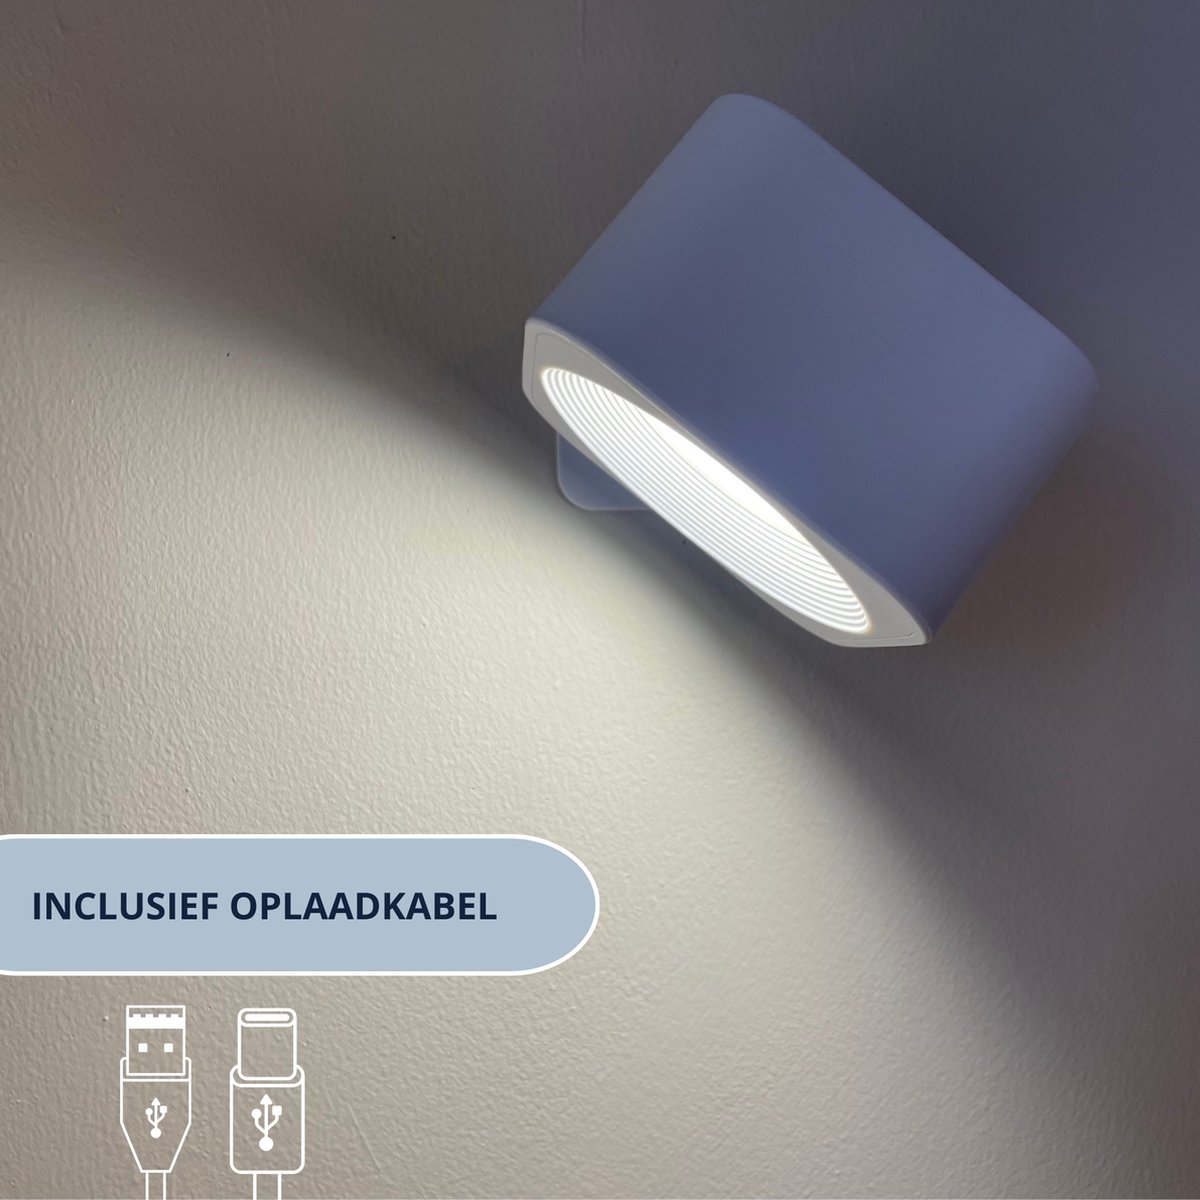 Latium Oplaadbare Vierkante LED Wandlamp voor Binnen - USB Oplaadbaar - Draadloos - Batterij - Dimbaar - Nachtlampje - Slaapkamer - Woonkamer - Touch Control - 360º rotatie - Wit